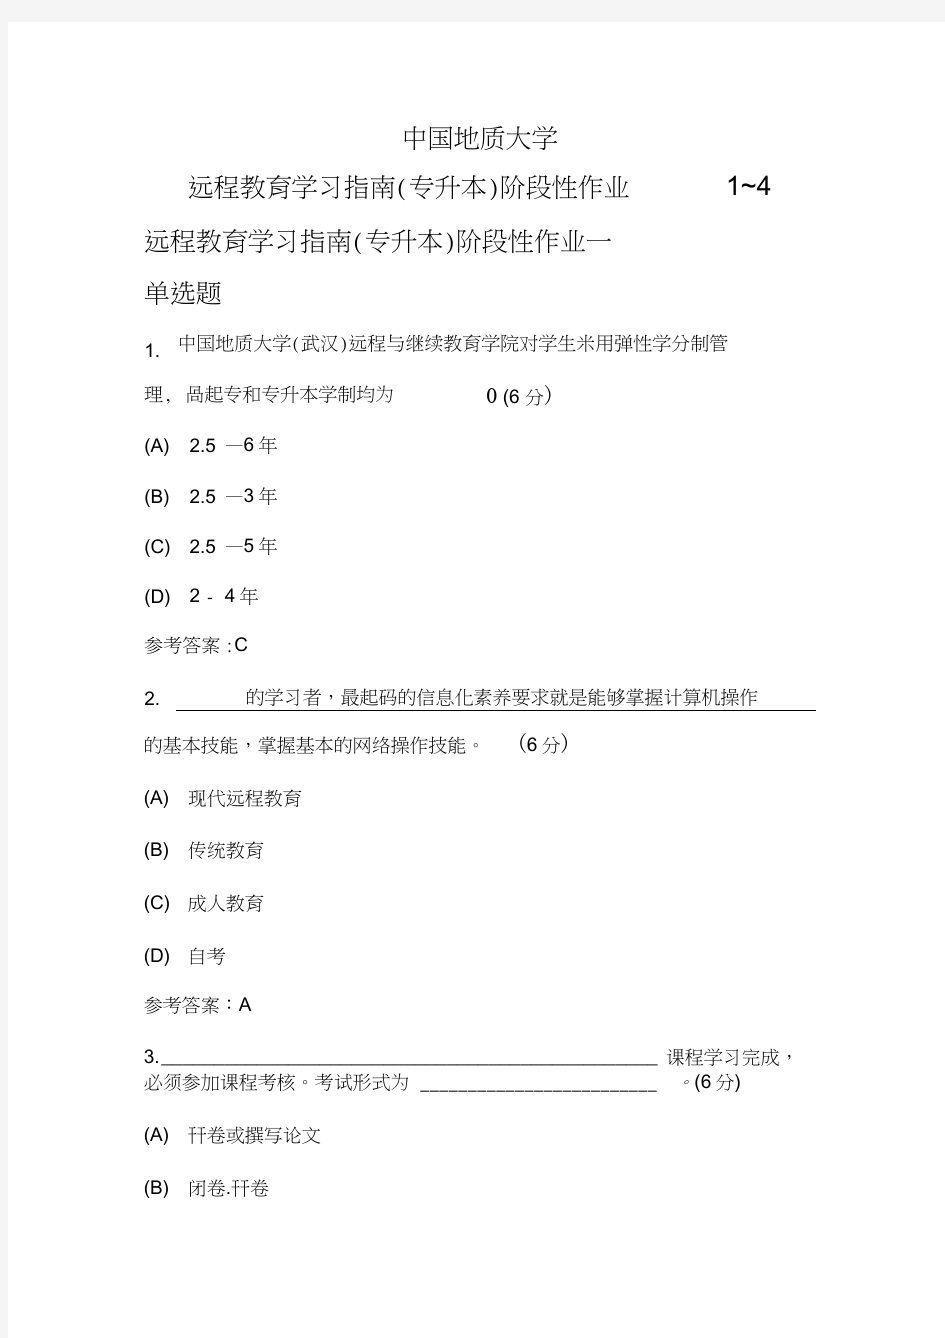 中国地质大学远程教育学习指南(专升本)阶段性作业1~4